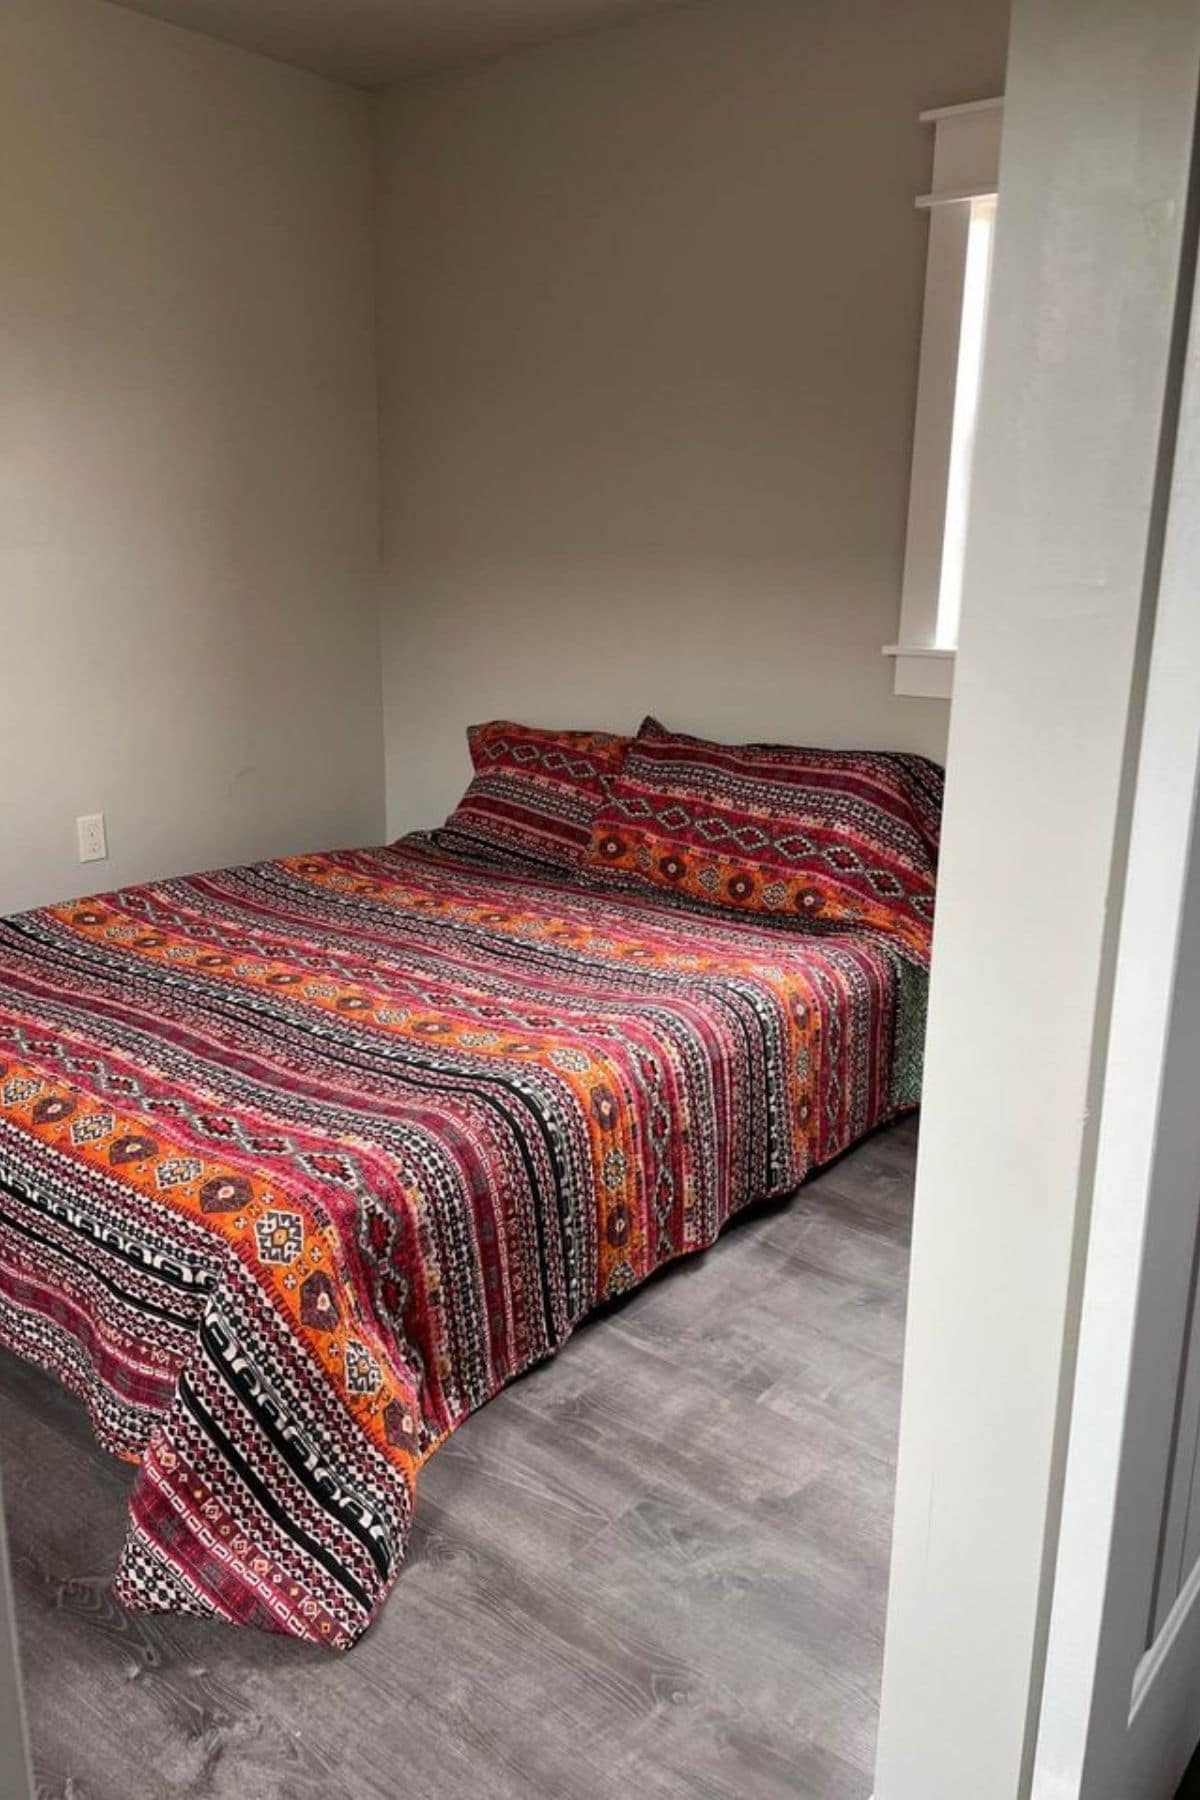 colorful bedding on bed inside door frame